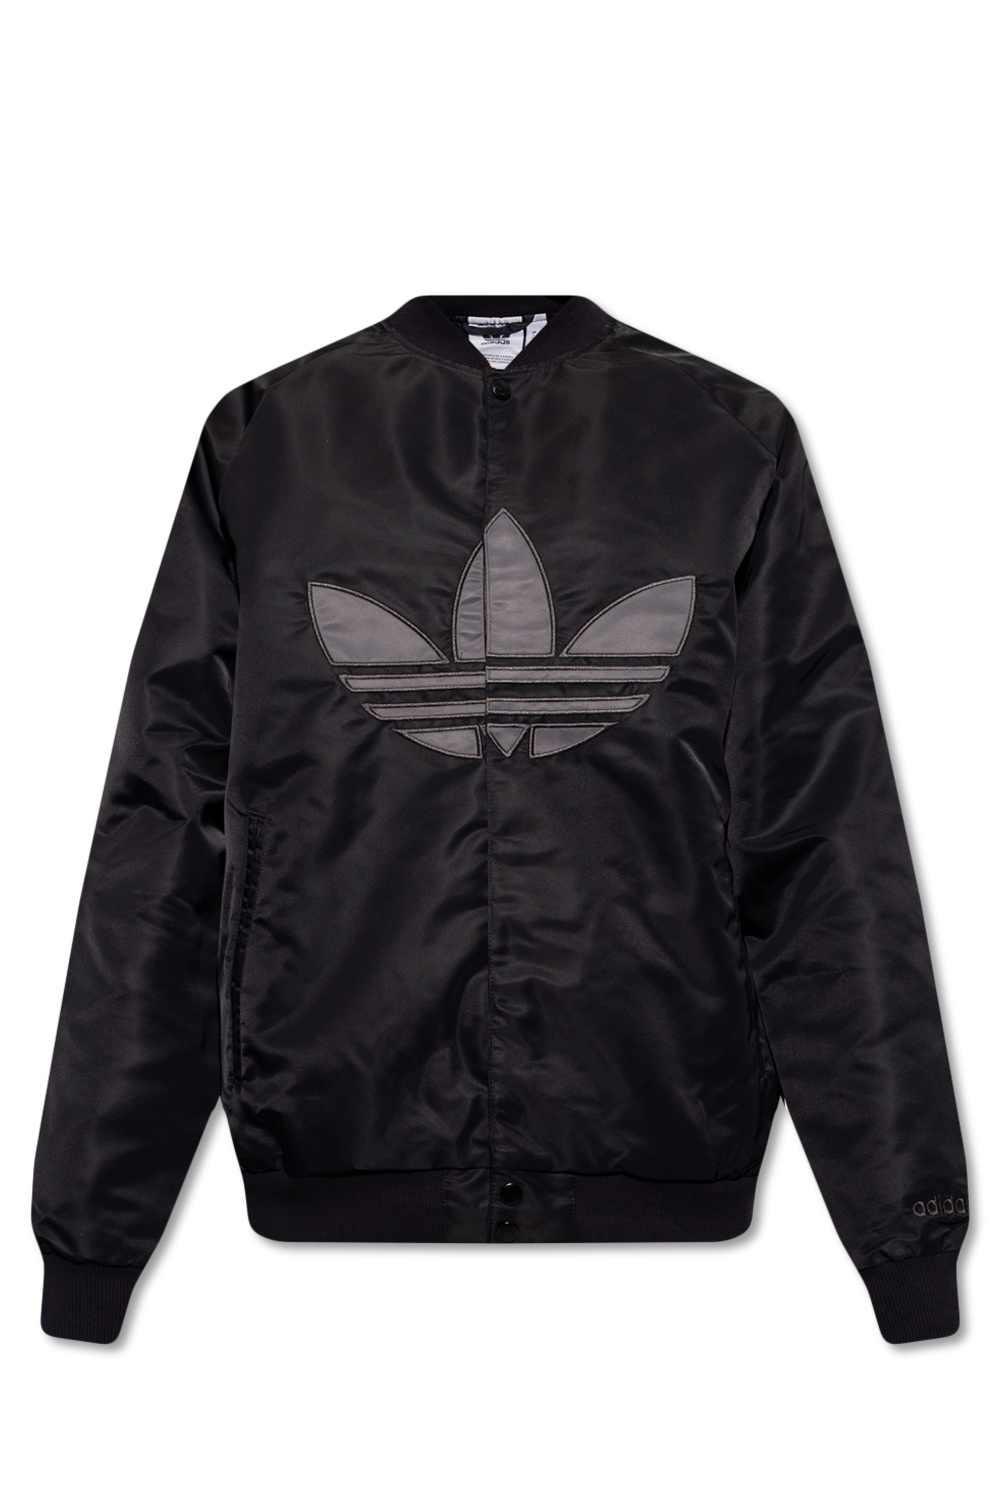 Adidas Originals Bomber Jacket, Men's, Size: XL, Black